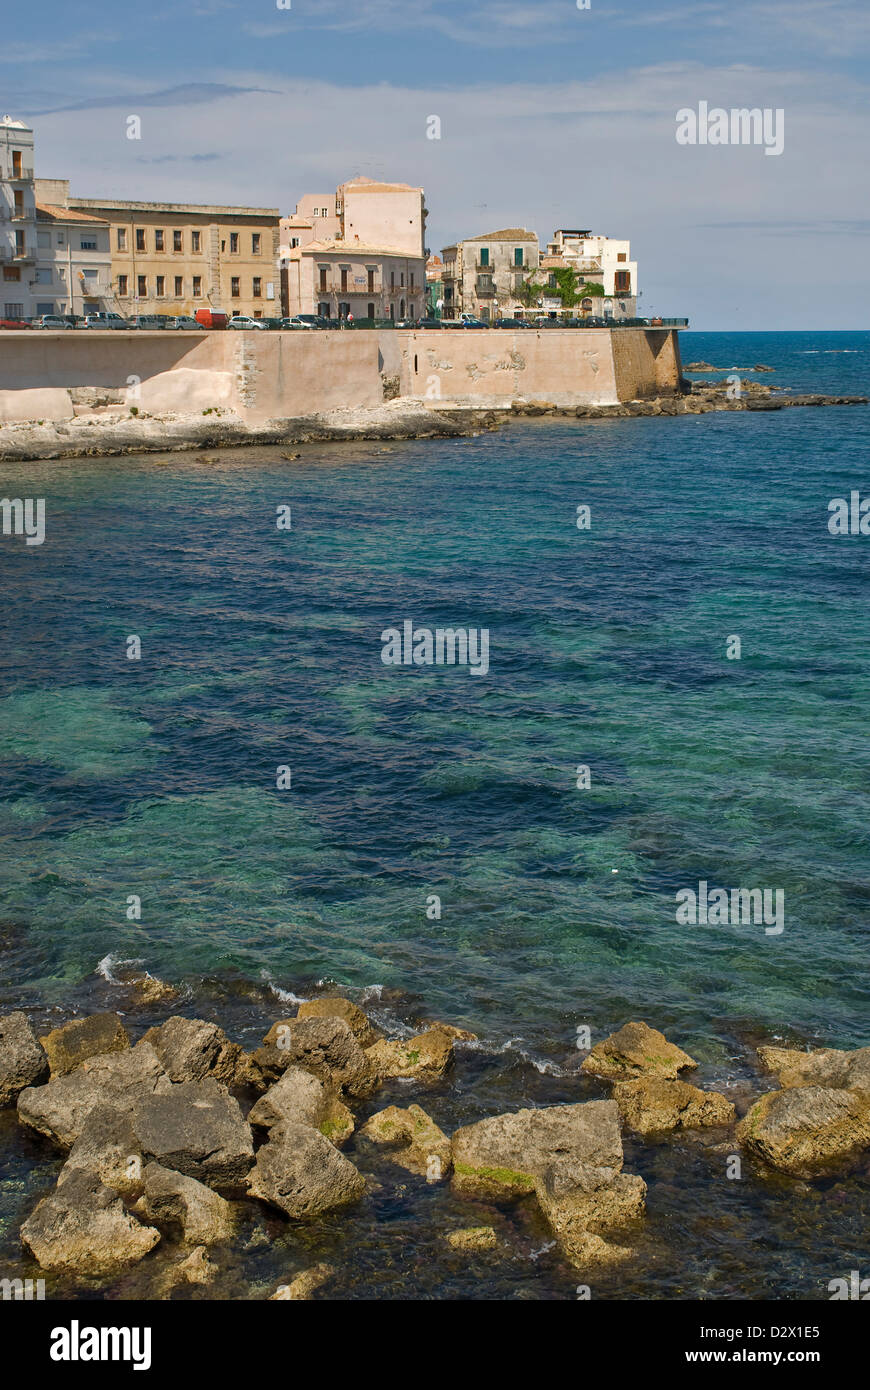 Europa Europa Italia Italia Italia mar Mediterráneo Sicile Sicilia Siracusa Sicilia Foto de stock